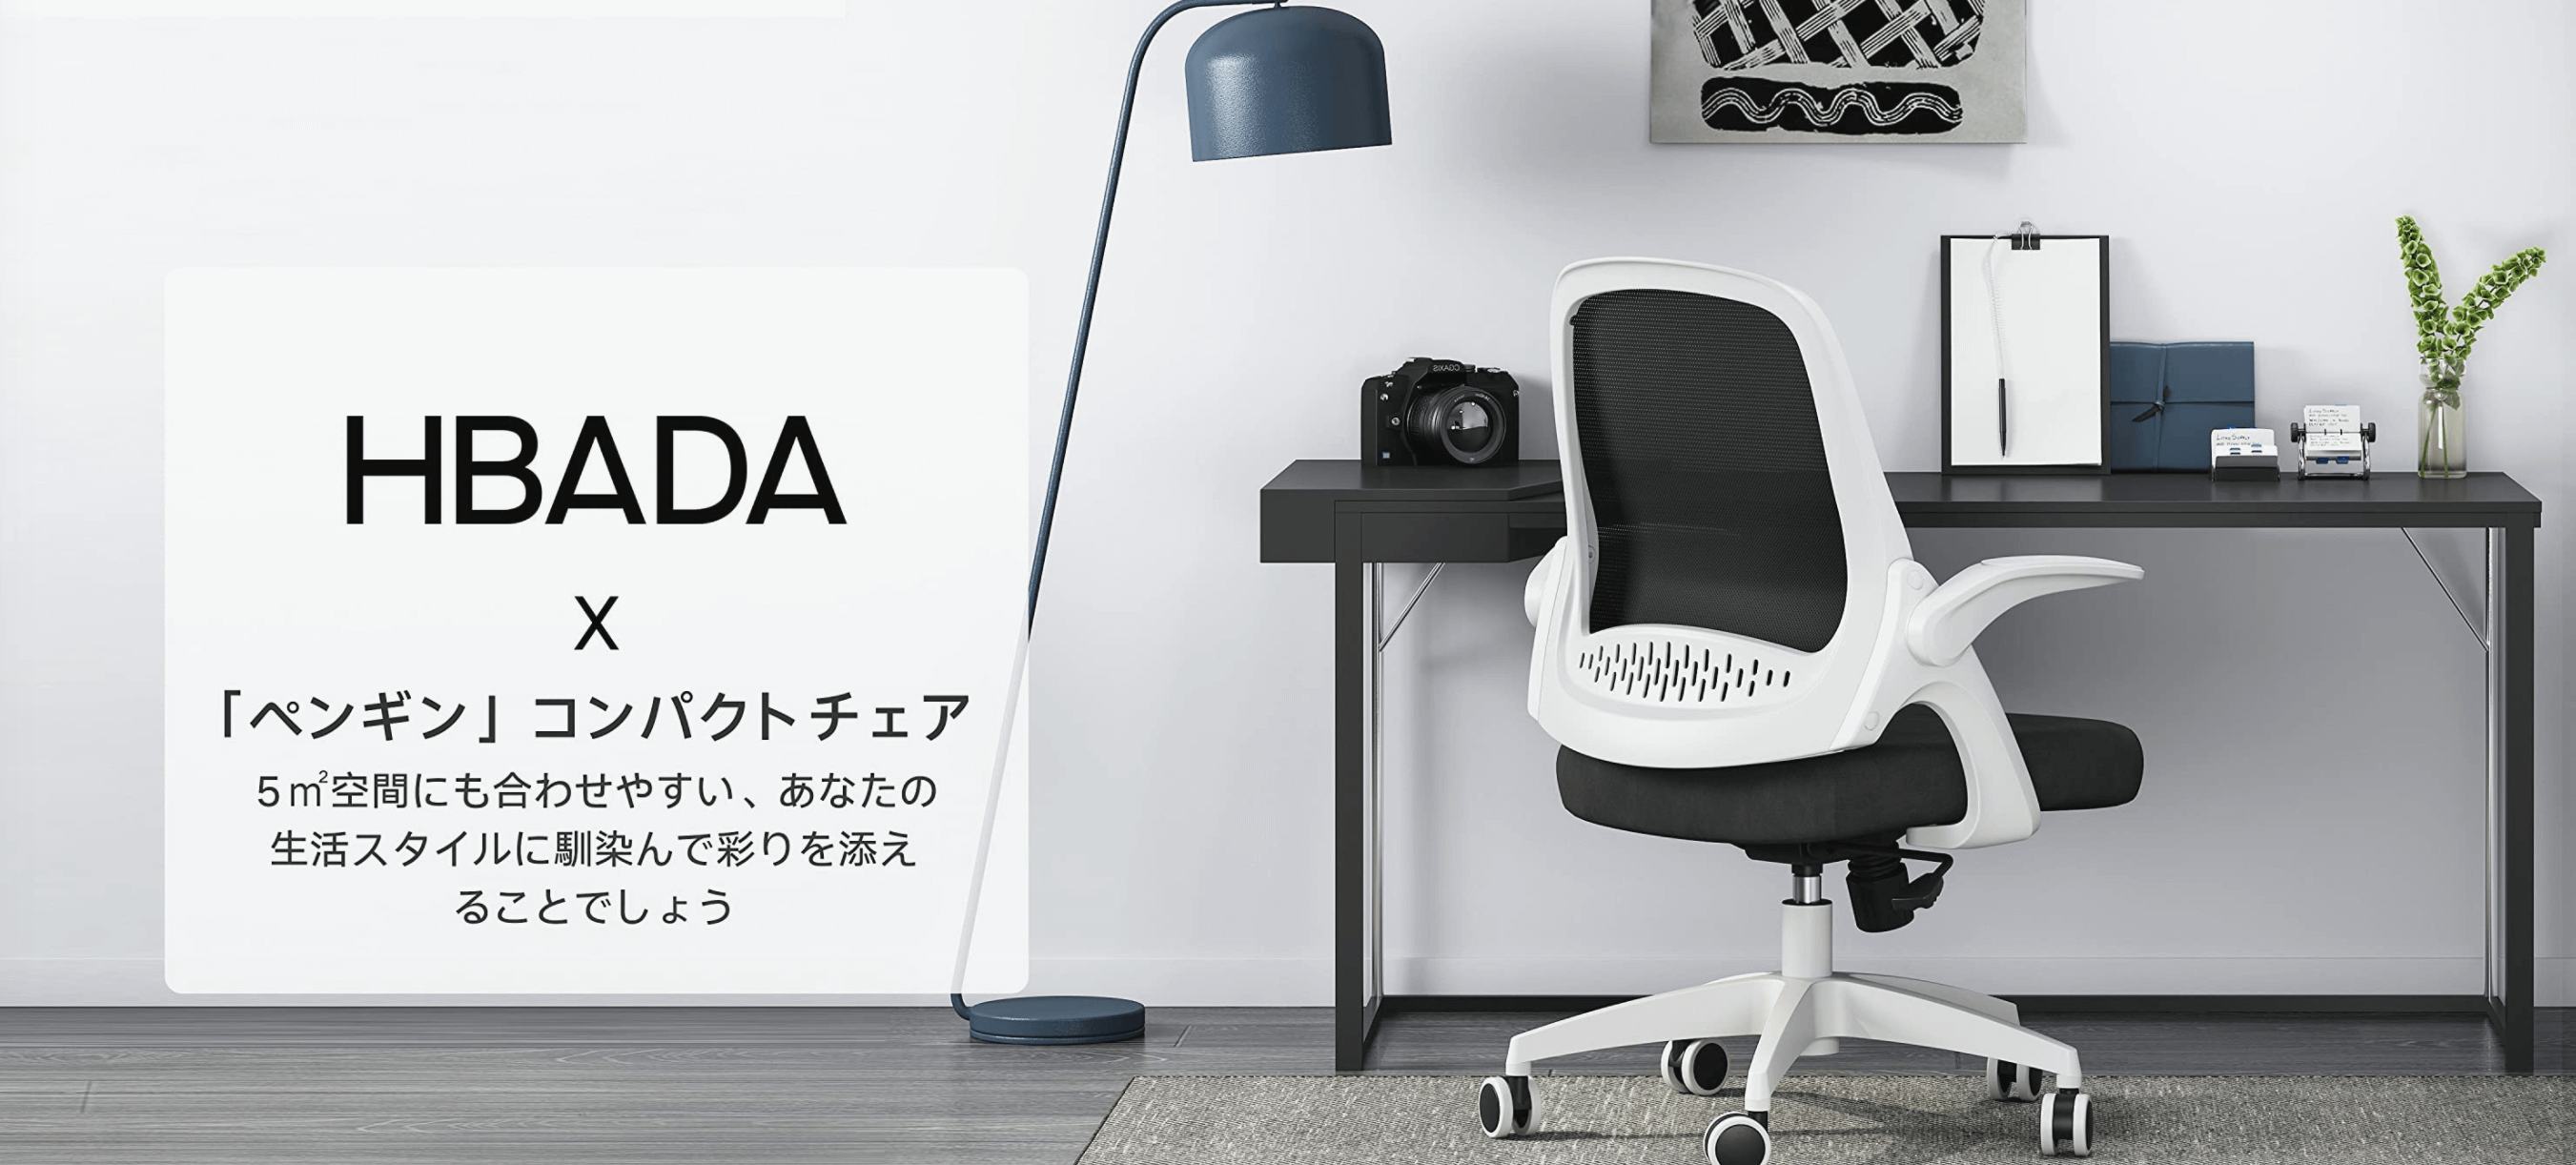 Amazonで購入したオシャレな白オフィスチェア Hbada ミニマルなデザインを追求したブランド